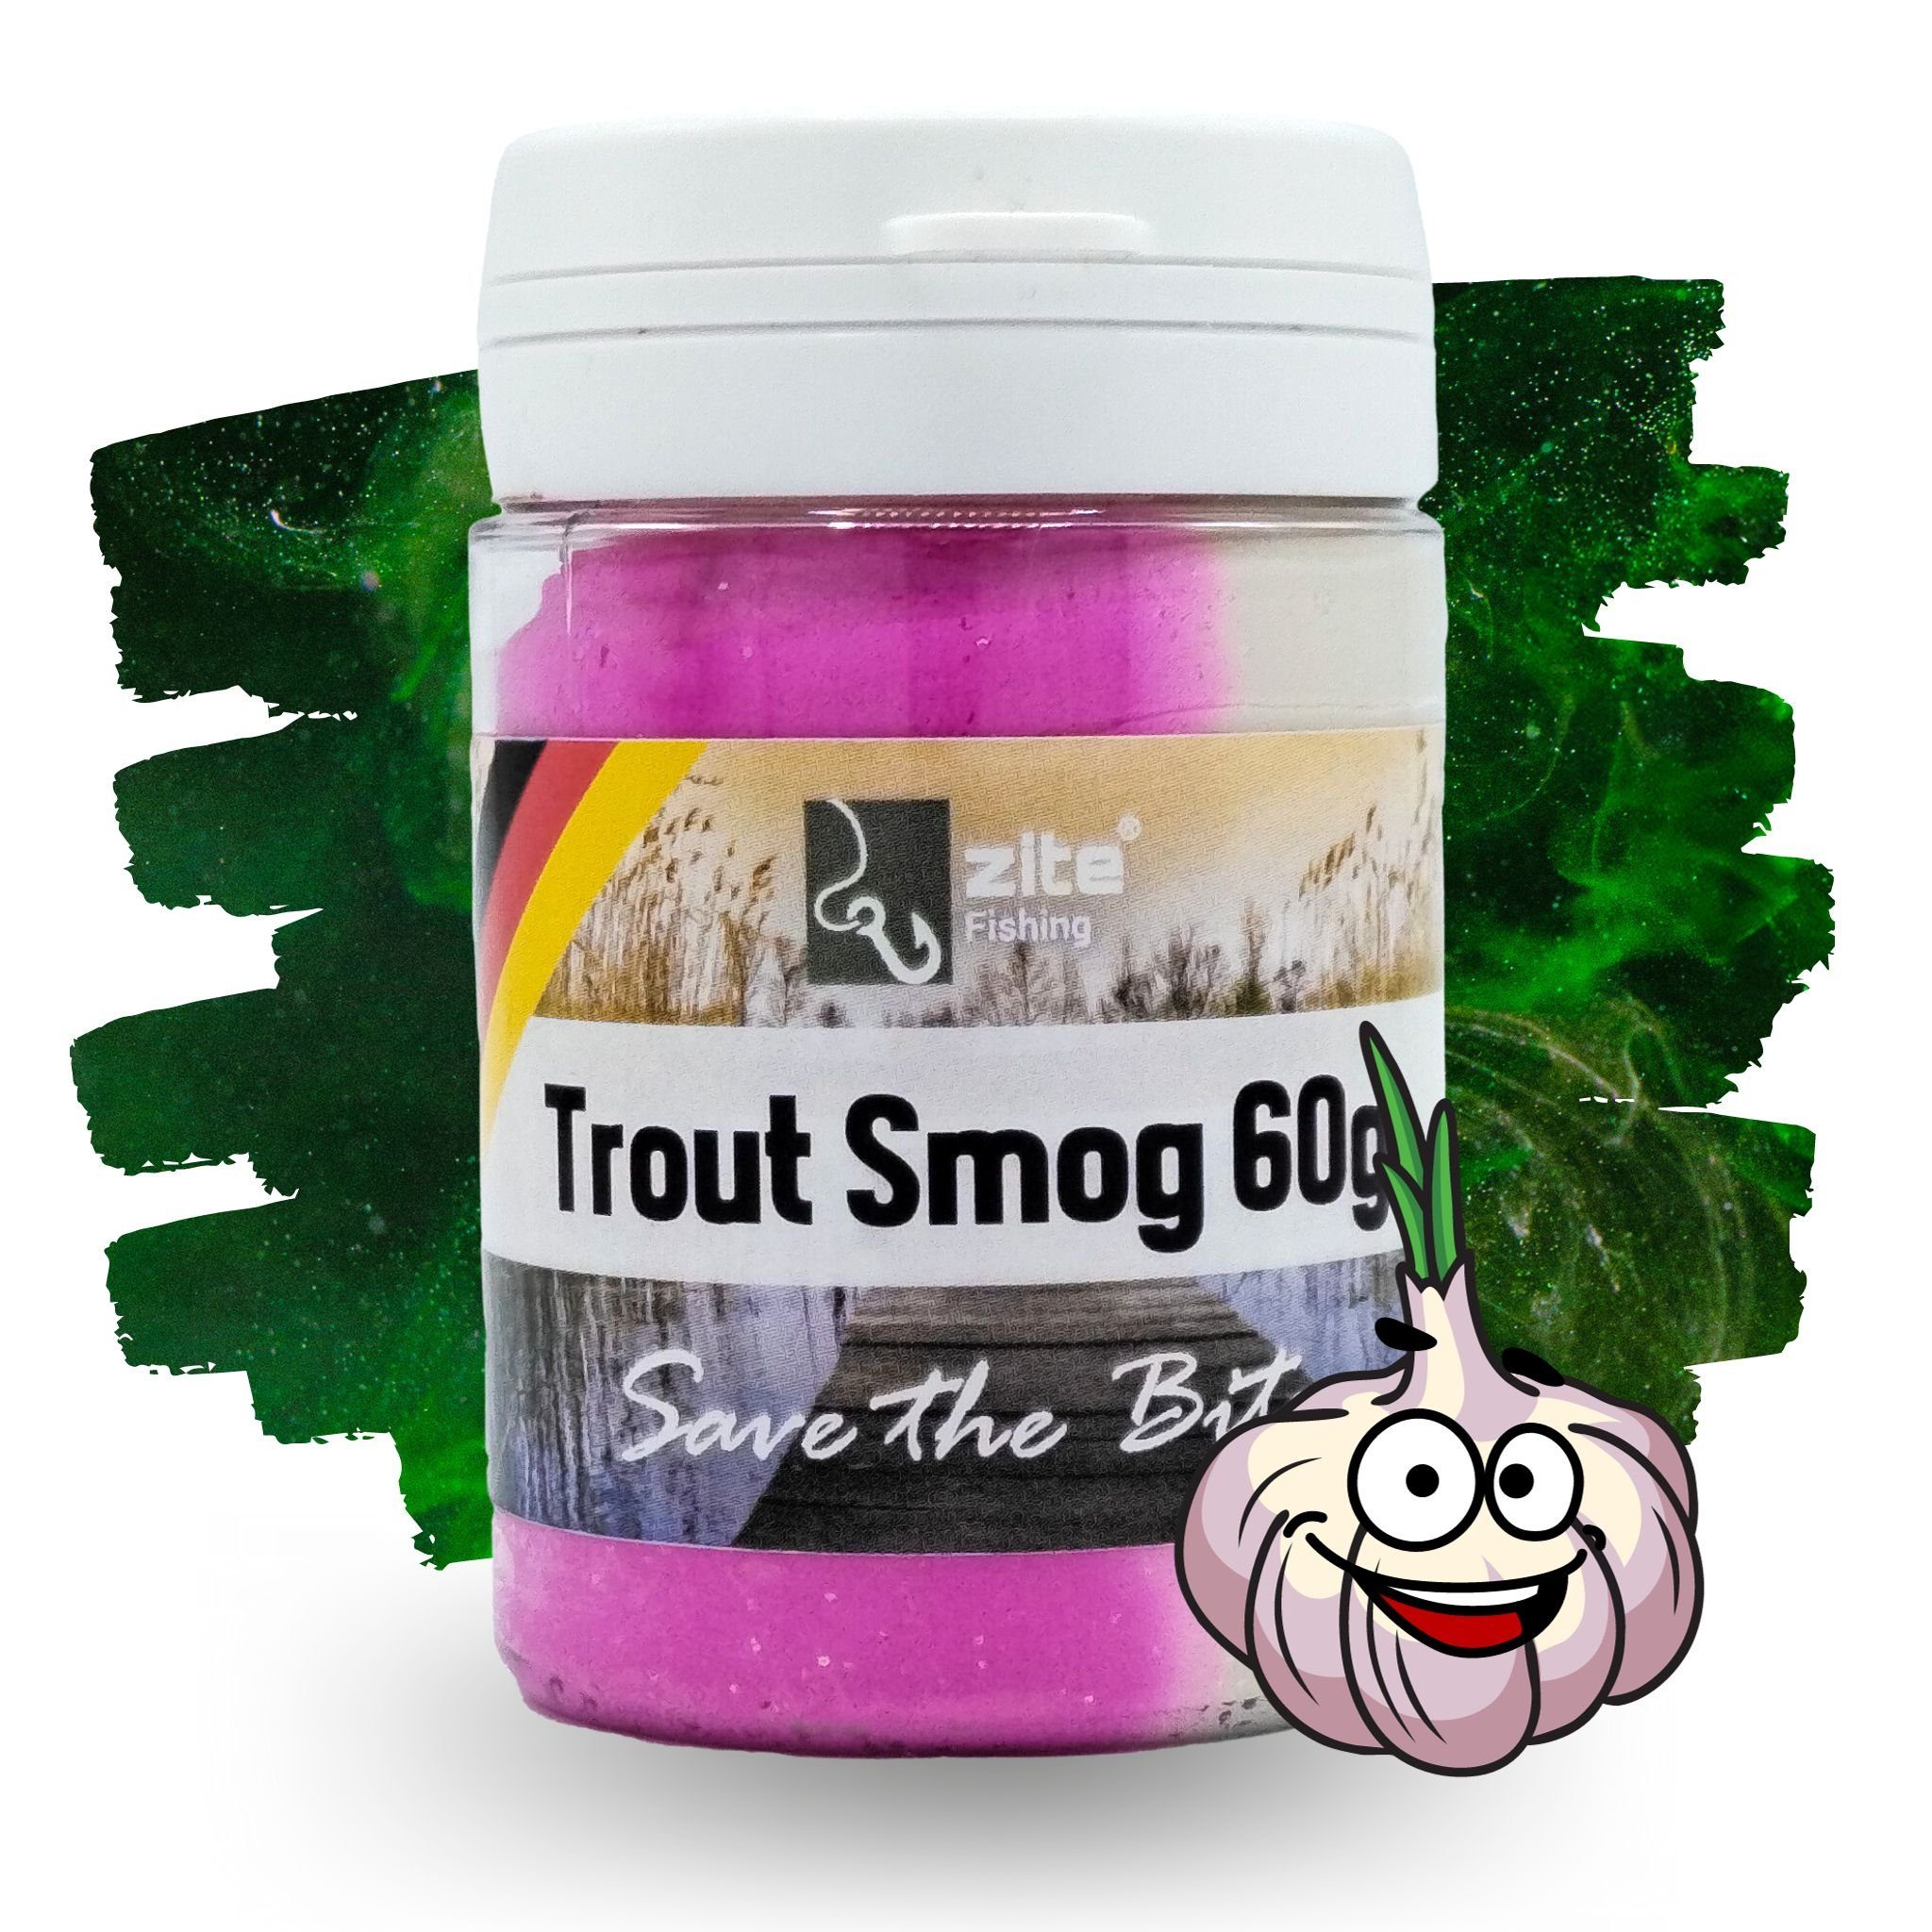 Zite Kunstköder Trout Smog 60g Knoblauch-Aroma - Forellenteig mit Farb- & Duft-Wolke Pink/Weiß